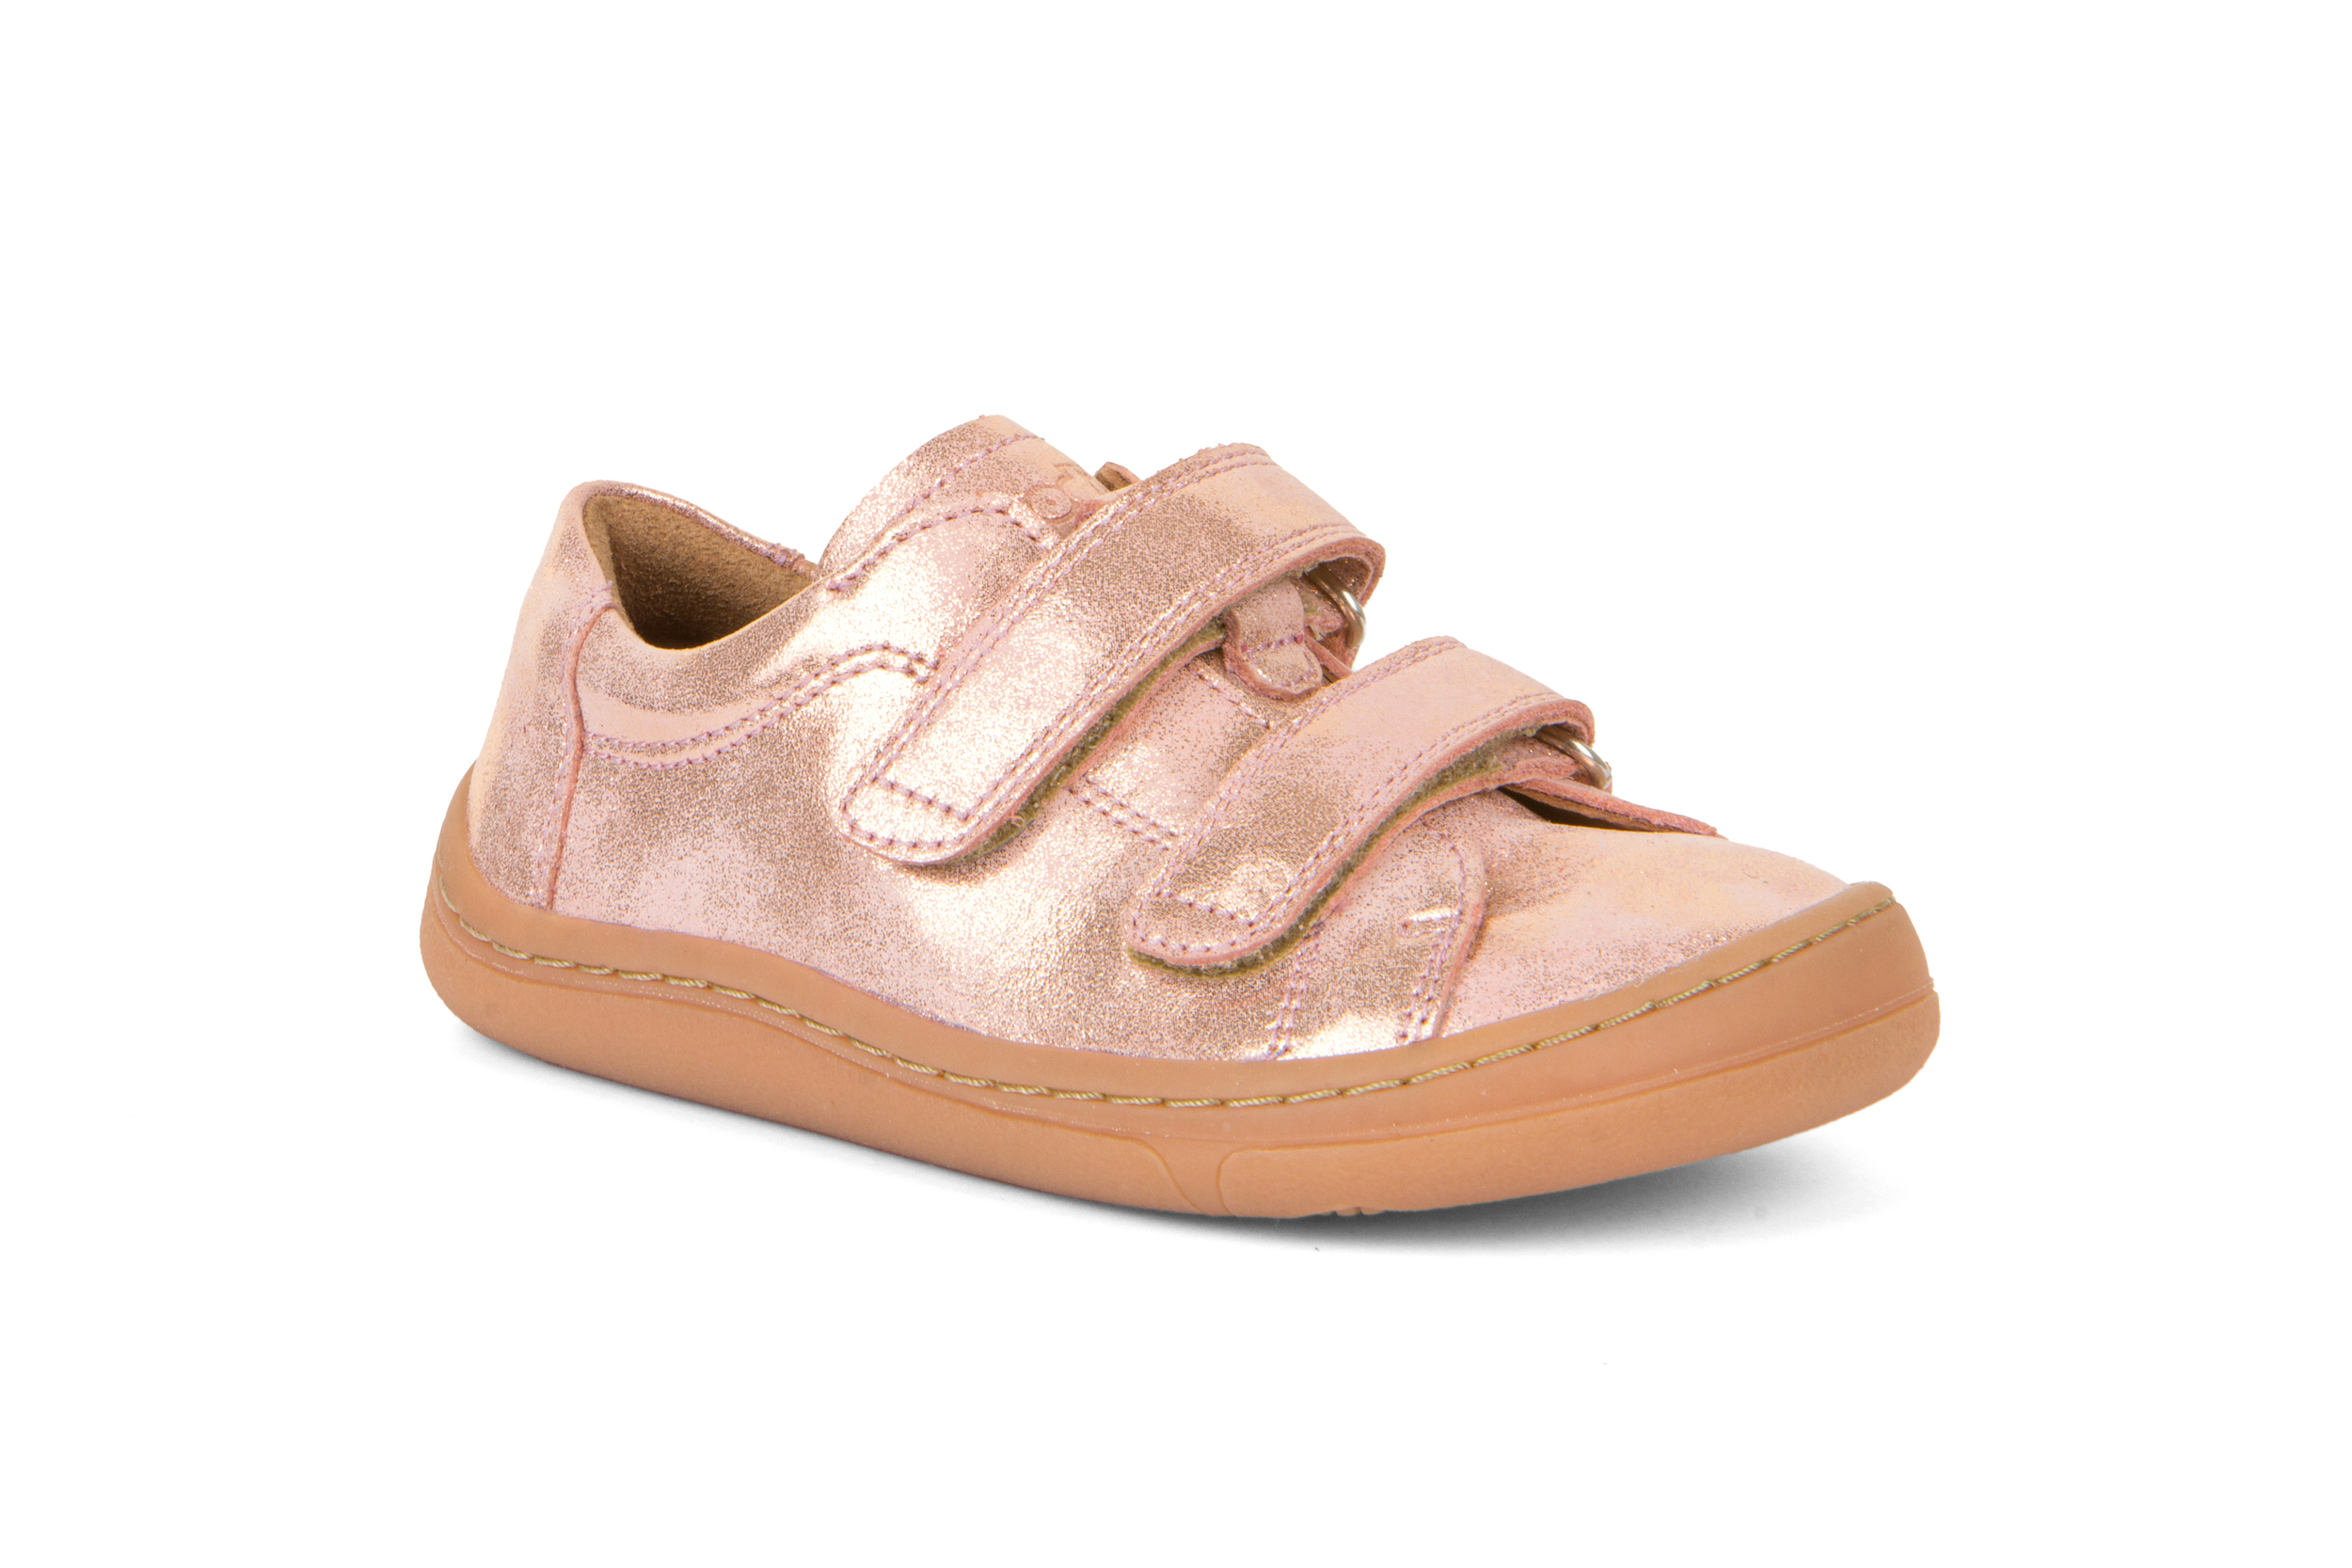 Chaussures en cuir Froddo barefoot - pink gold - G3130225-11